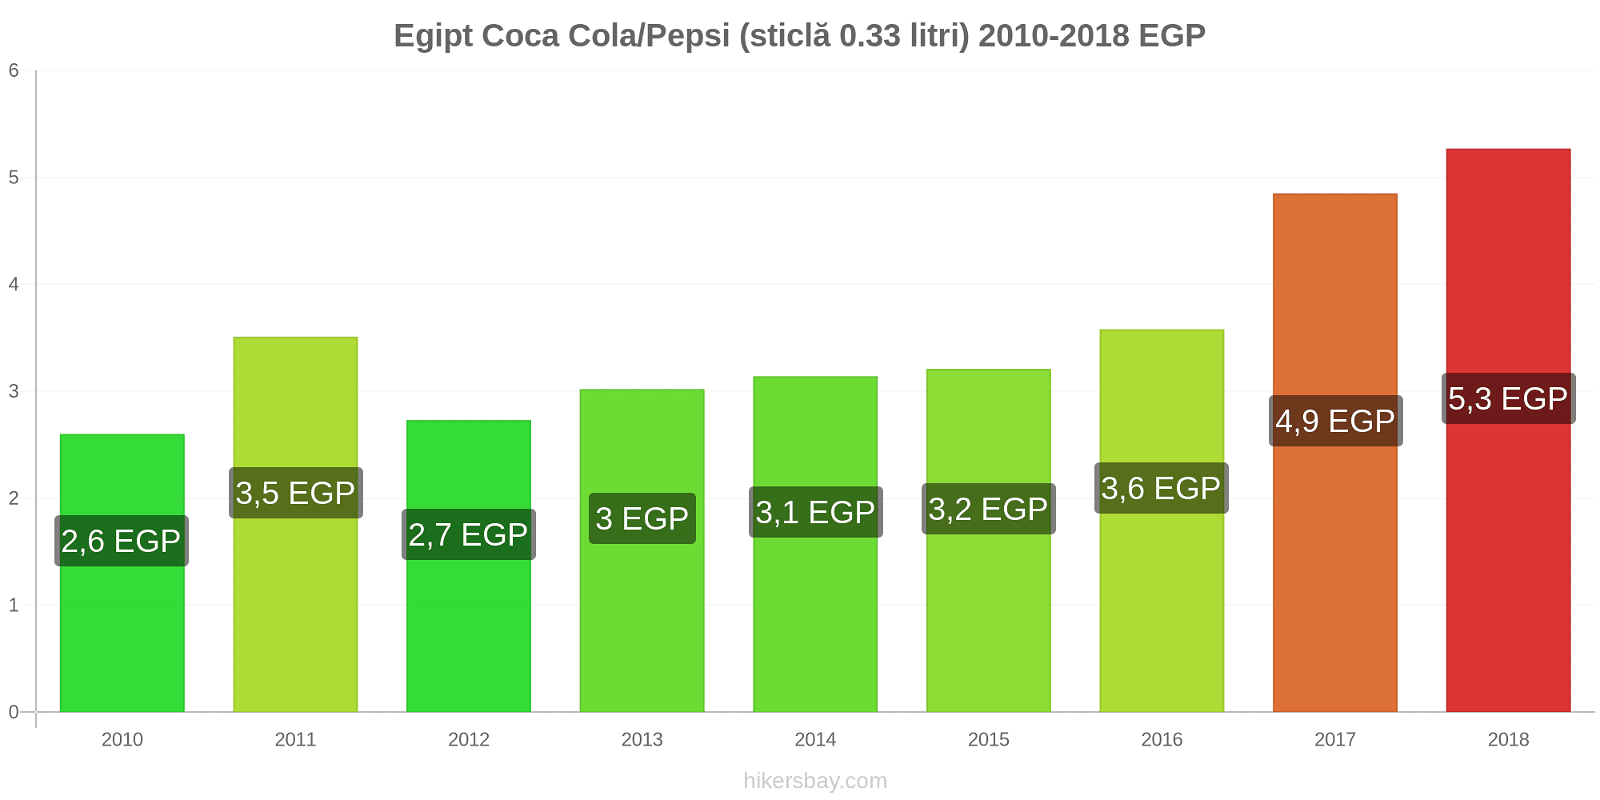 Egipt schimbări de prețuri Coca-Cola/Pepsi (sticlă de 0.33 litri) hikersbay.com